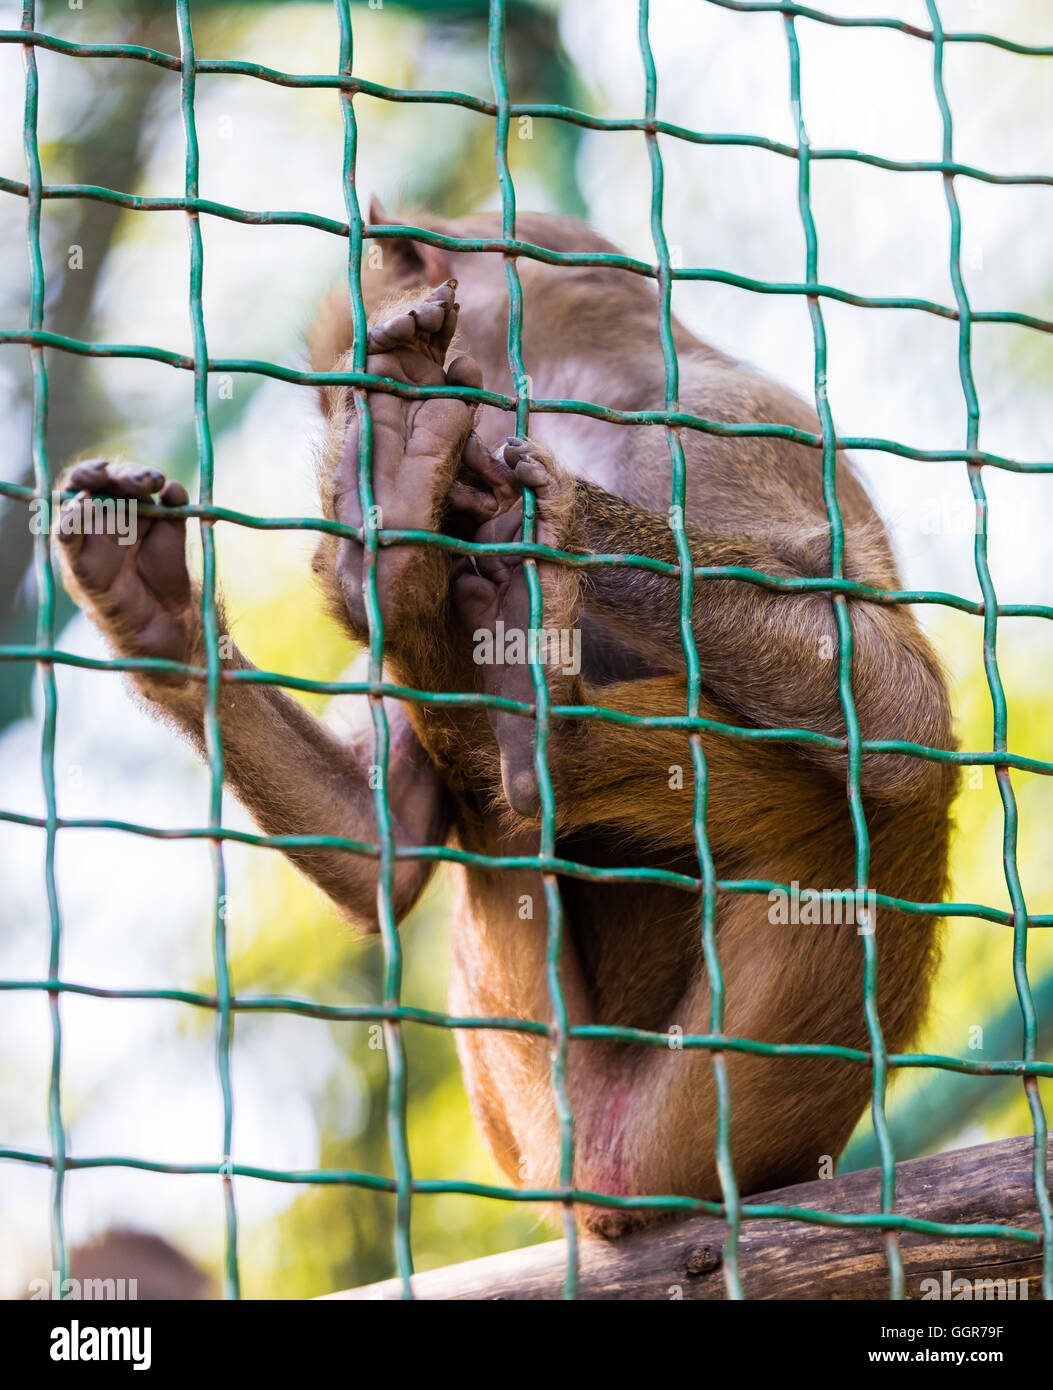 Animale giovane babbuino scimmia seduta in gabbia Foto Stock